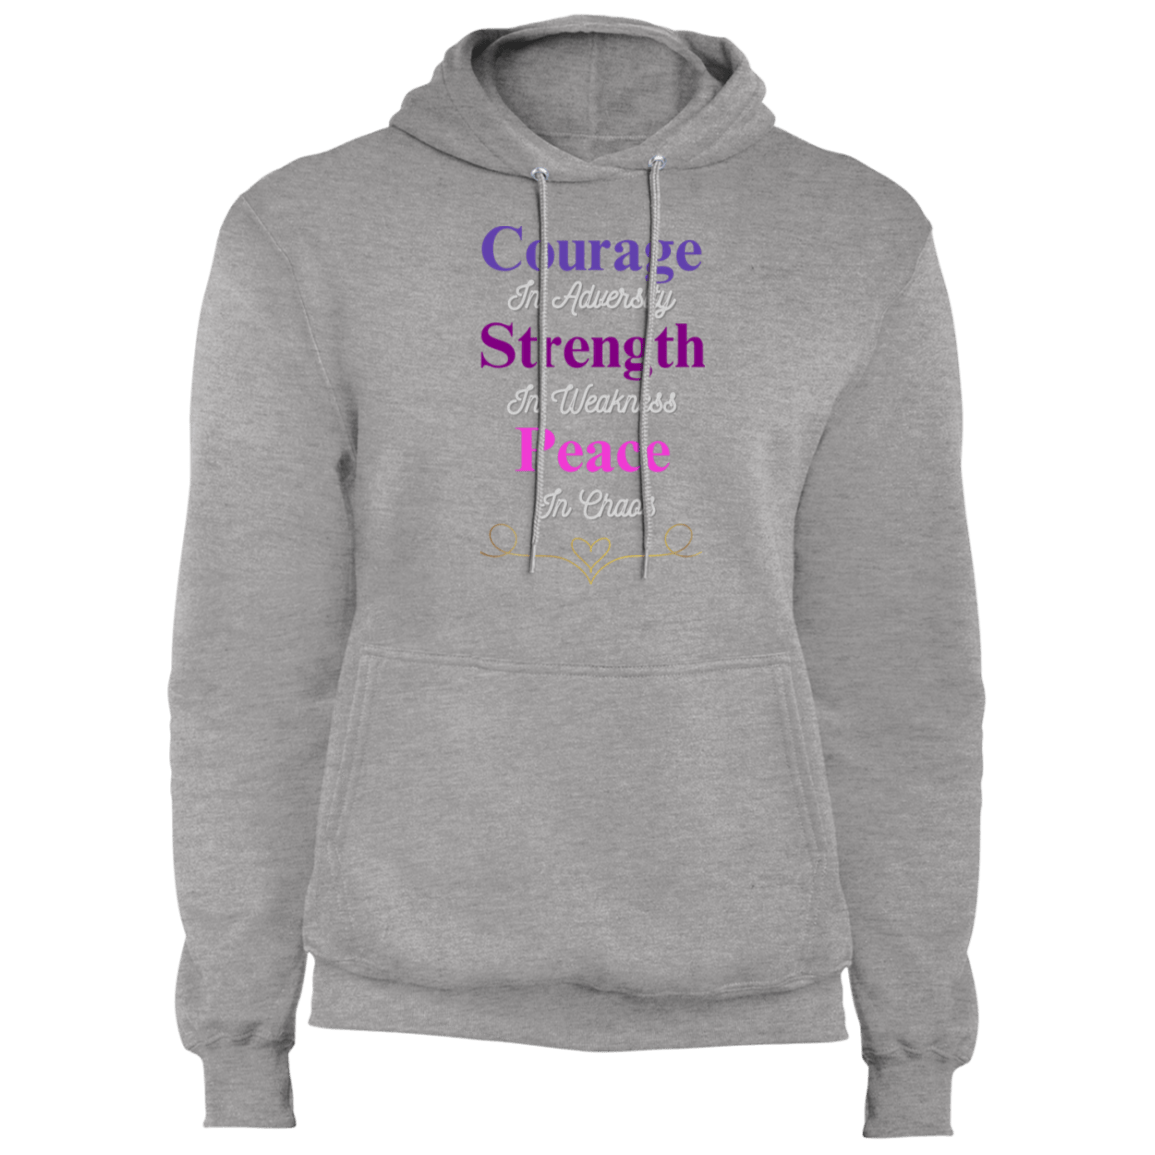 Courage in Adversity Men's Hoodie | Men's Sweatshirt